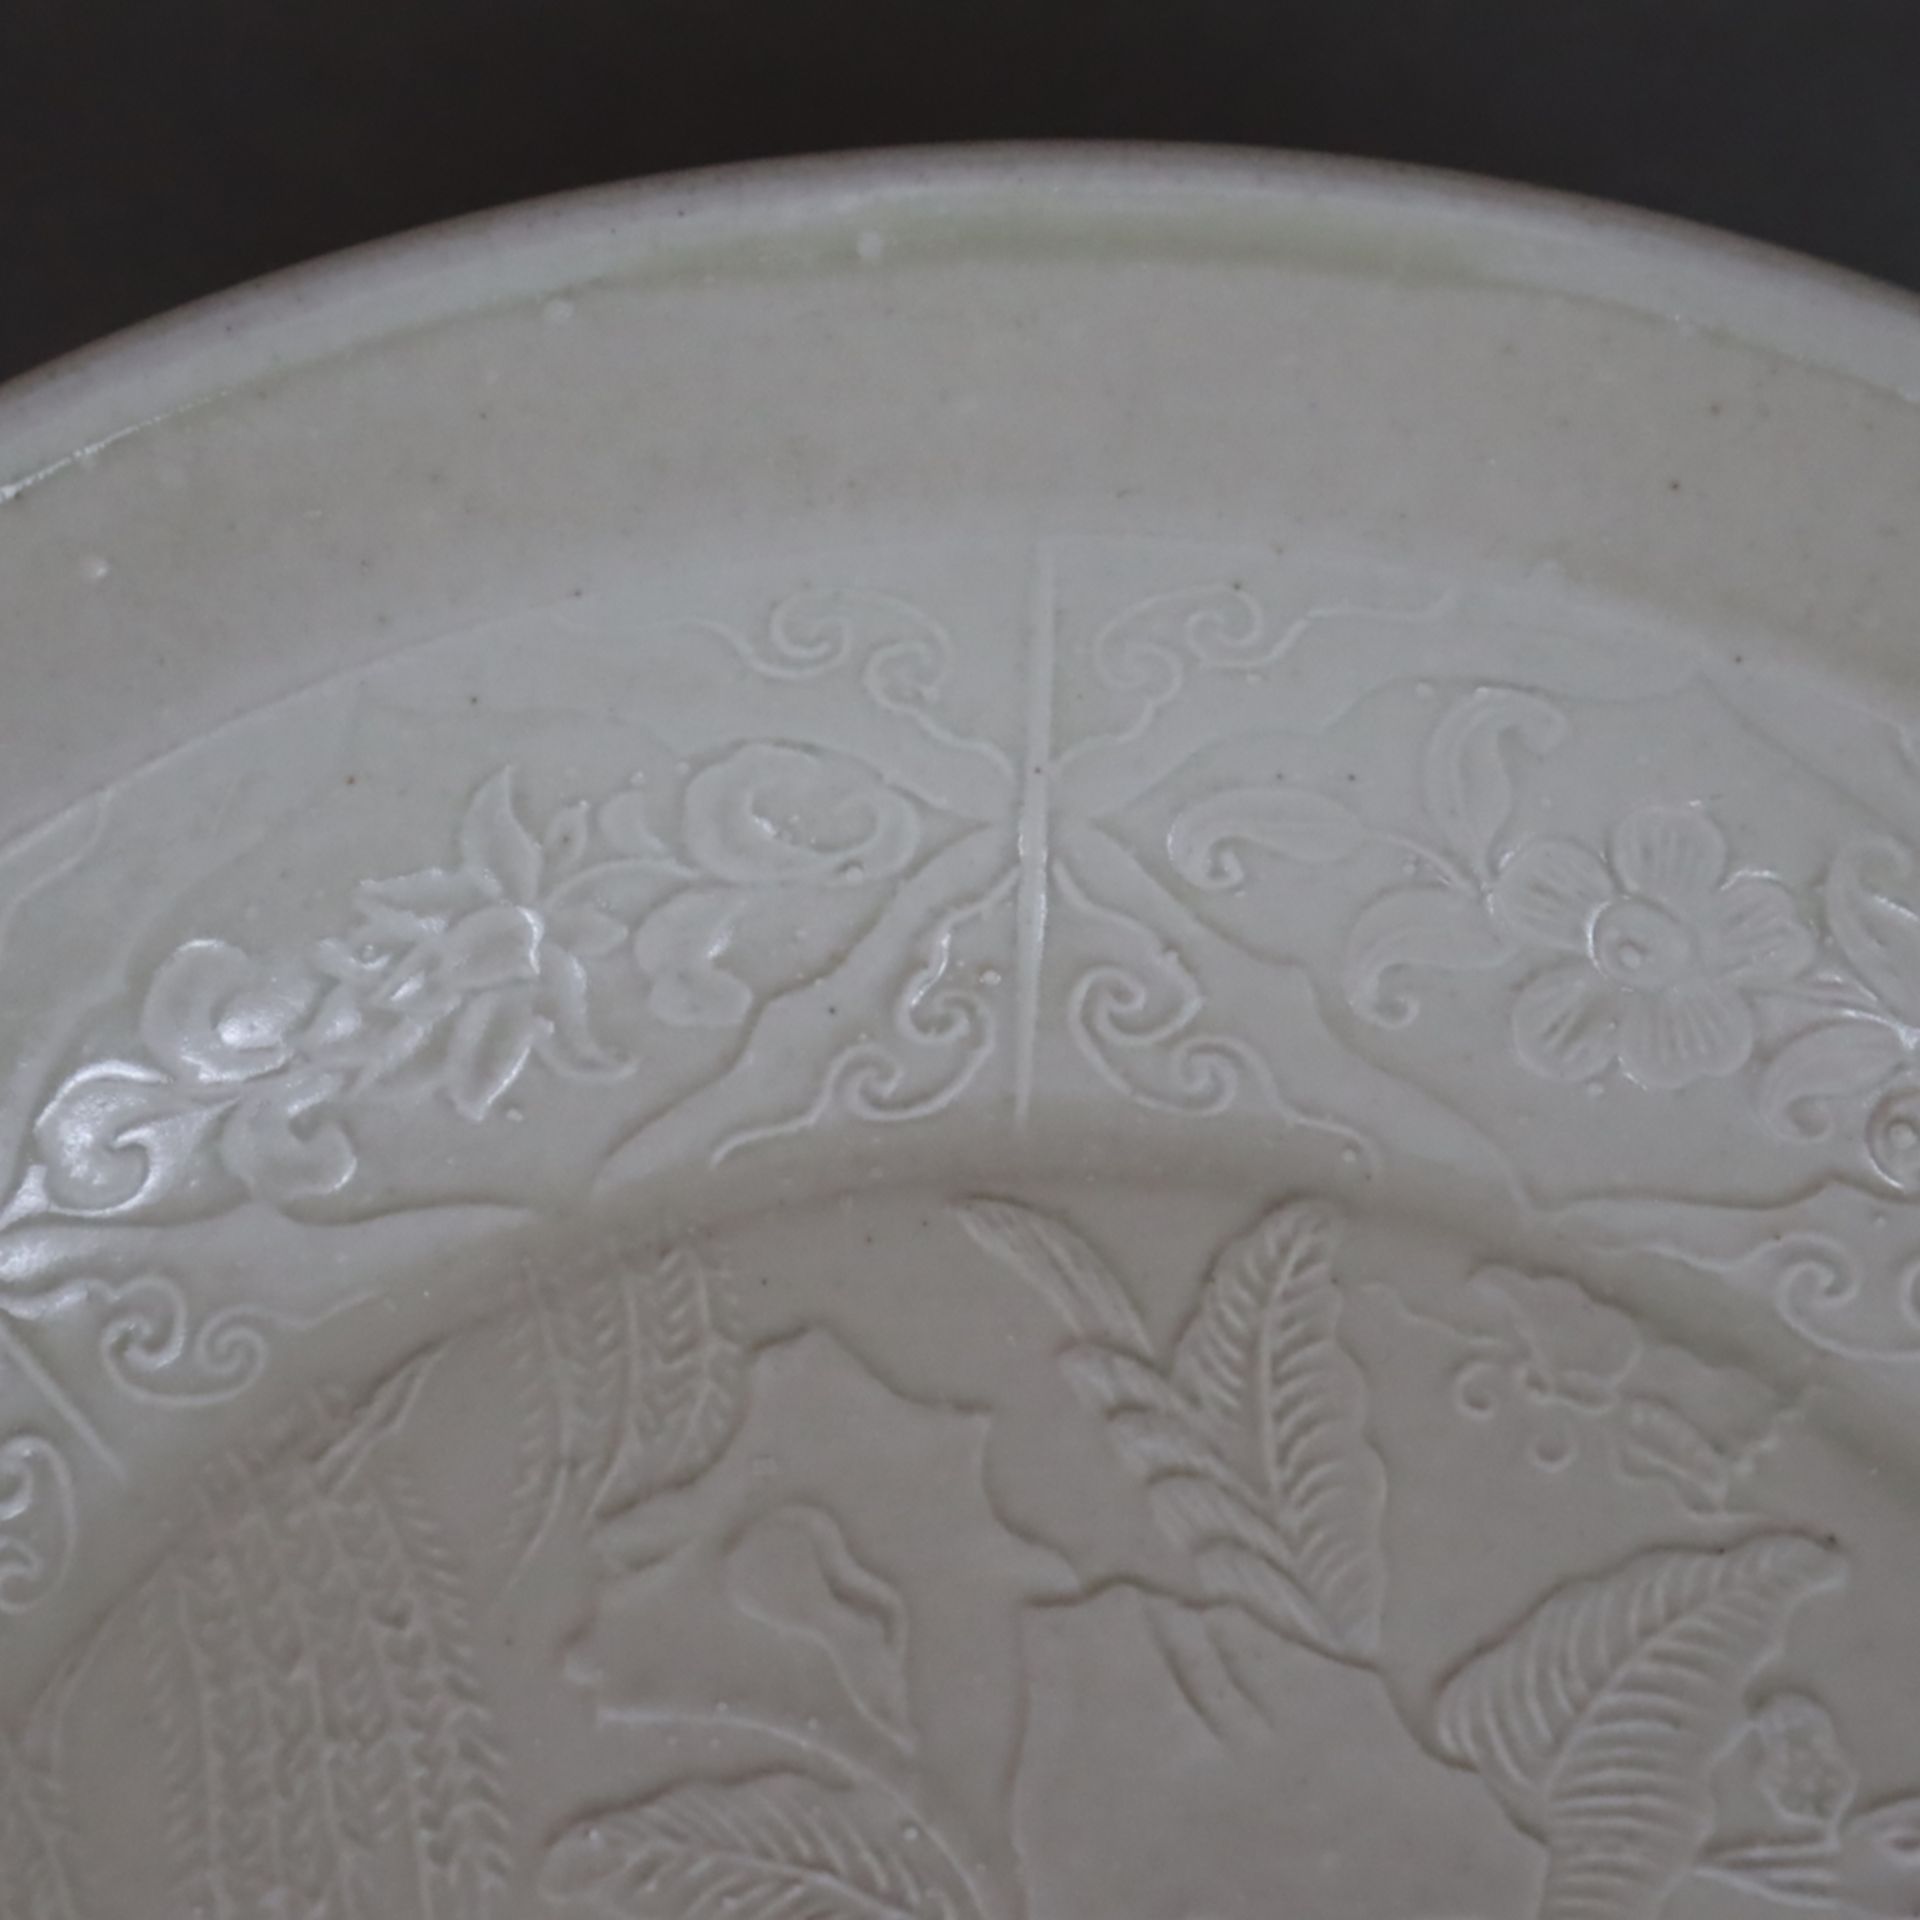 Flache Schale - China, Steinzeug, runde Form ohne Standring, allseits gräuliche Glasur, im Inneren  - Bild 3 aus 8